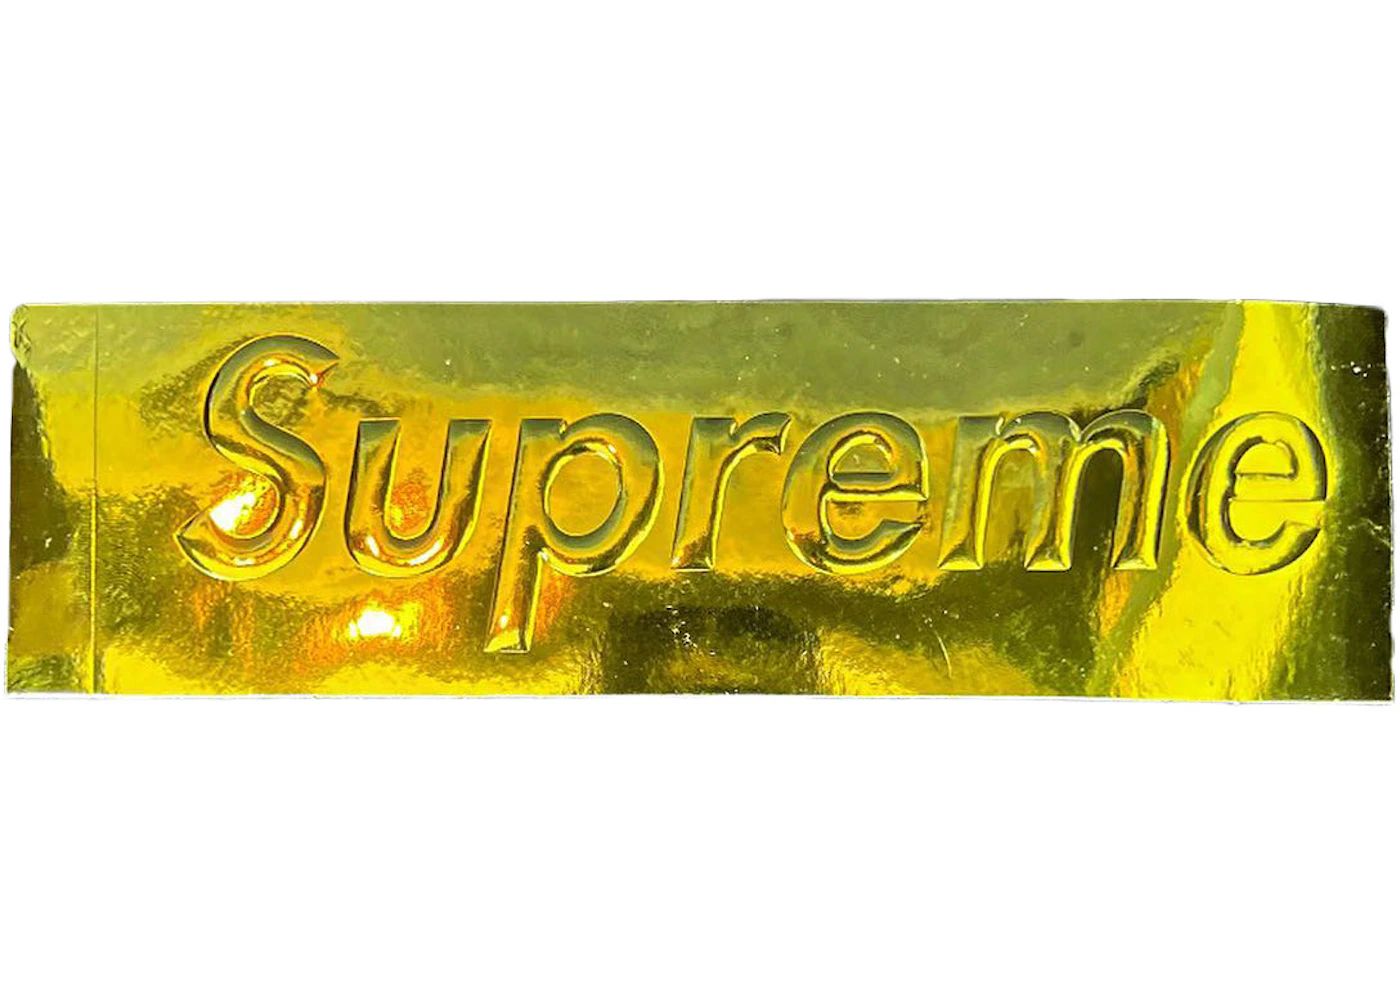 Supreme Embossed Metallic Gold Box Logo Sticker - FW22 - US